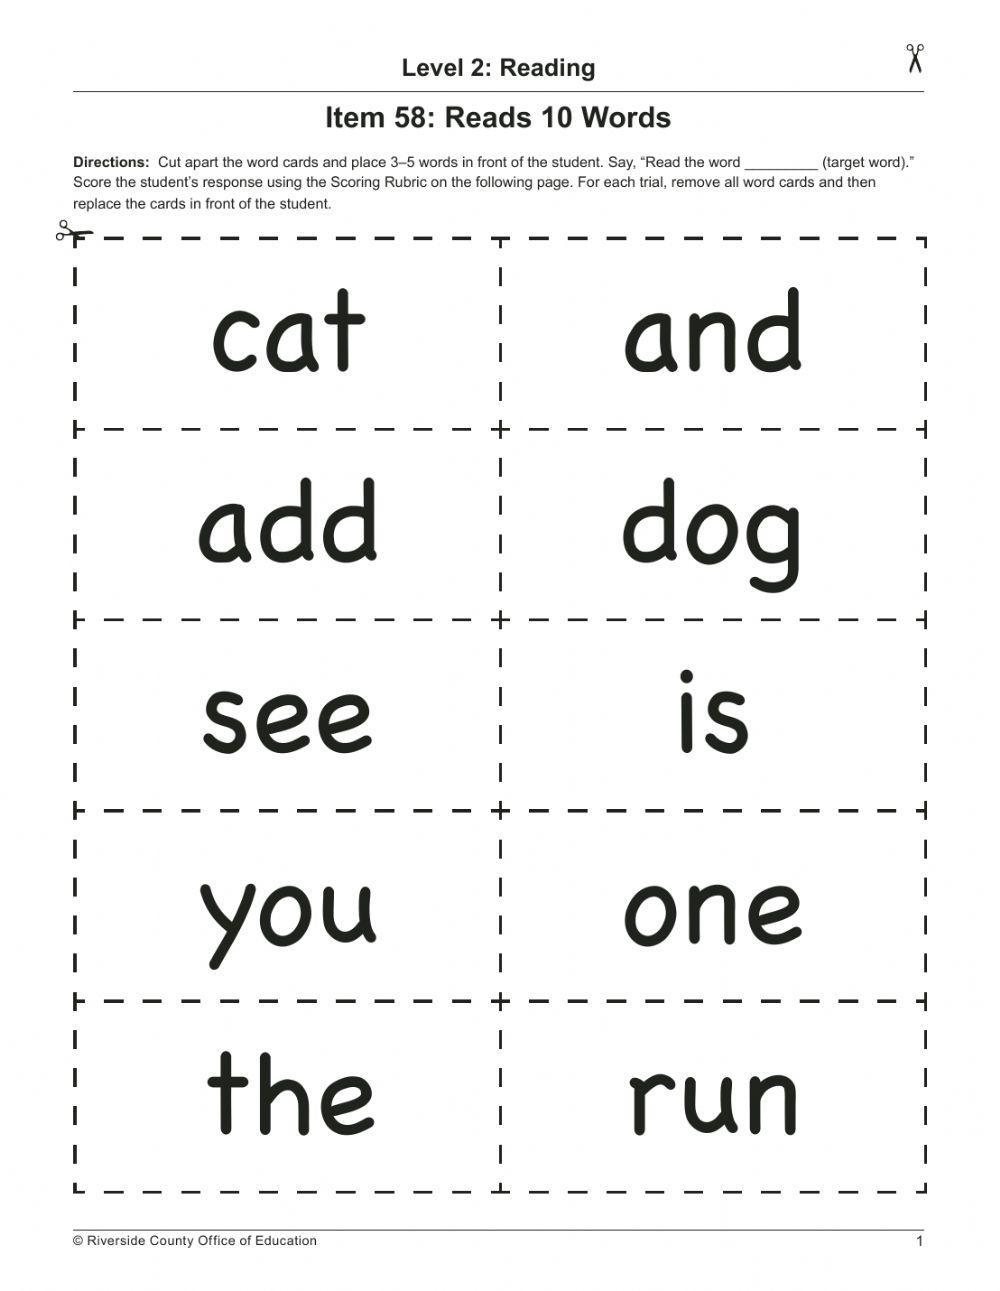 Read 10 words at kindergarten level